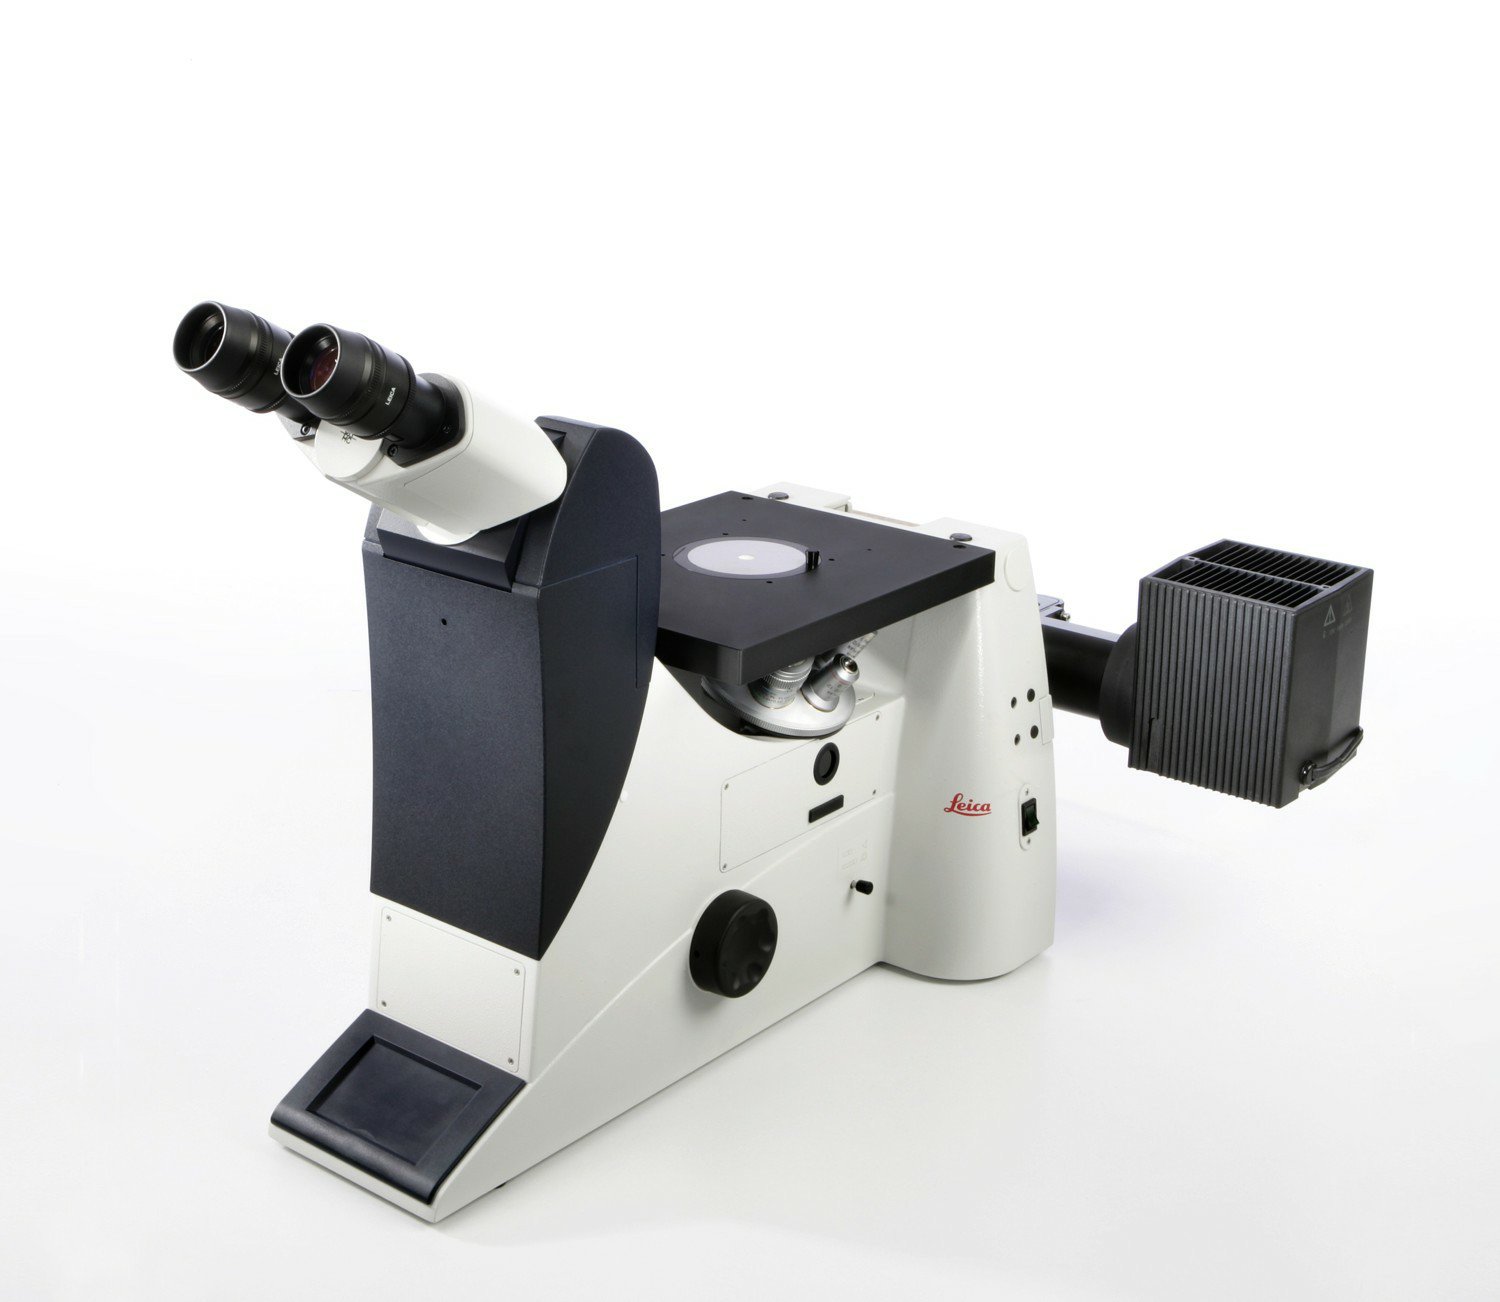 Das Leica DMI3000 M bietet hervorragende Bildqualität und intuitive Bedienung. 